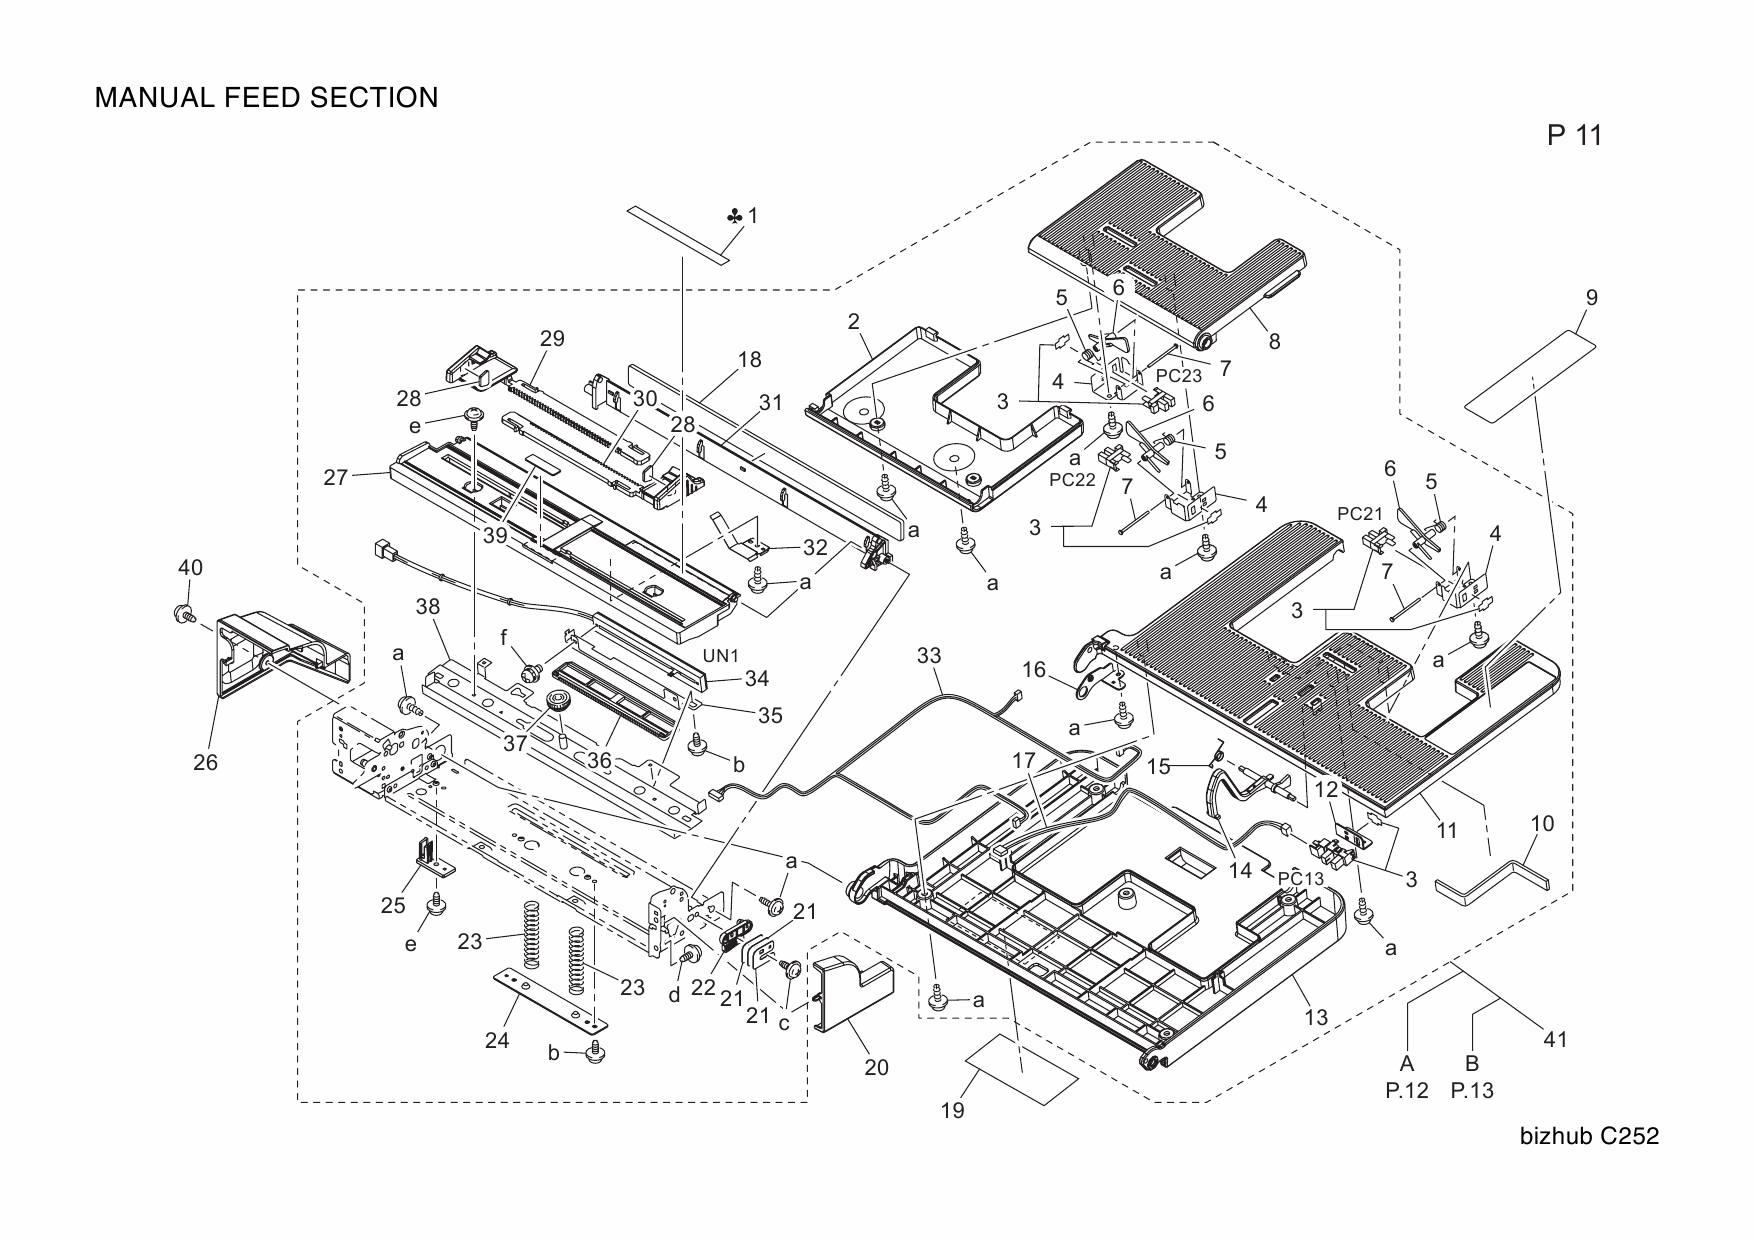 Konica-Minolta bizhub C252 Parts Manual-6